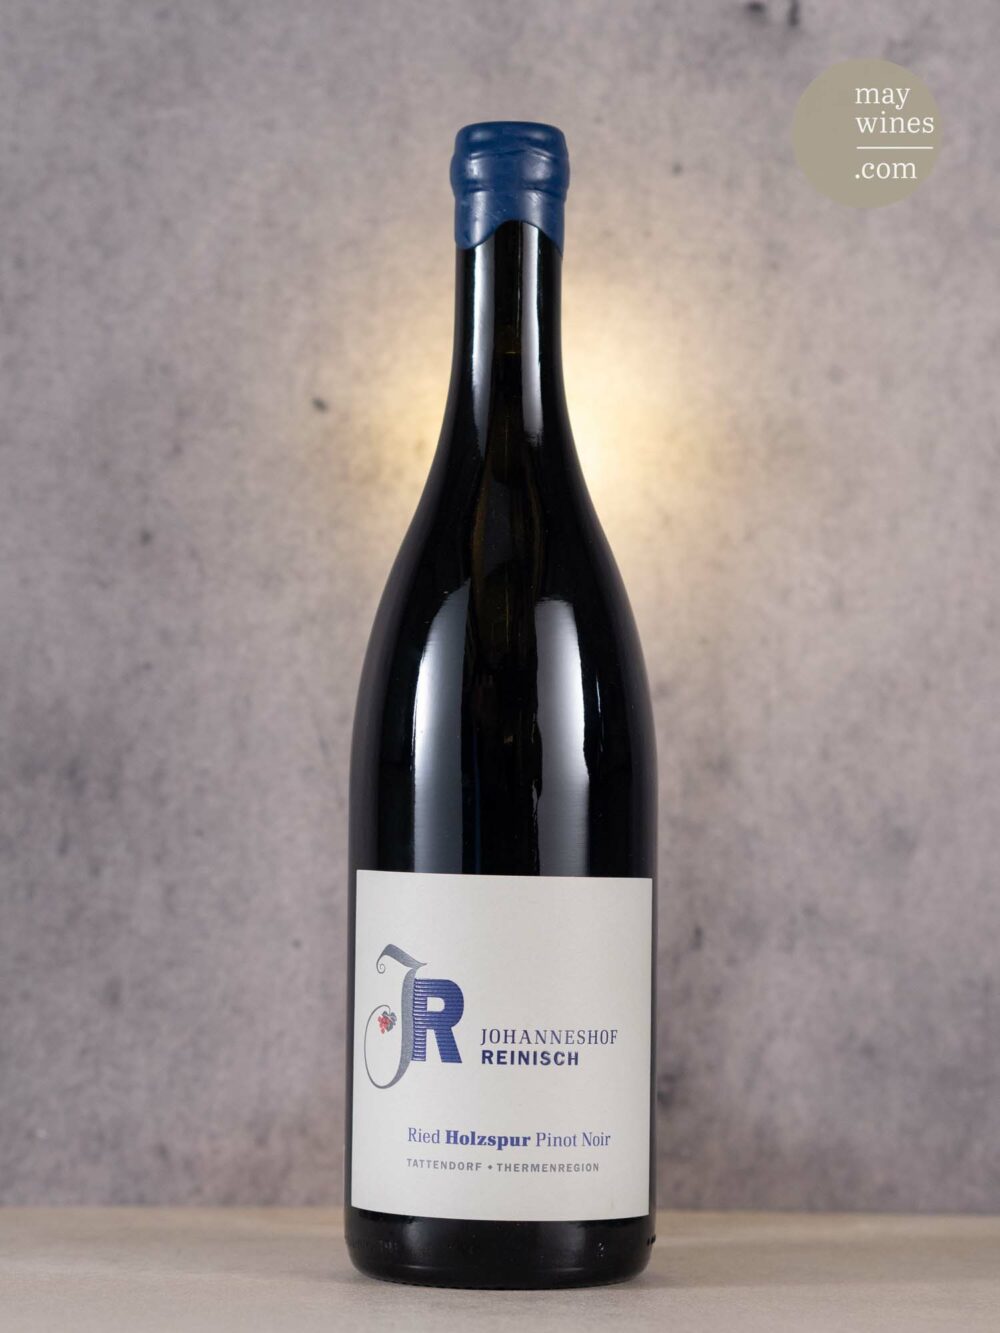 May Wines – Rotwein – 2019 Holzspur Pinot Noir - Johanneshof Reinisch